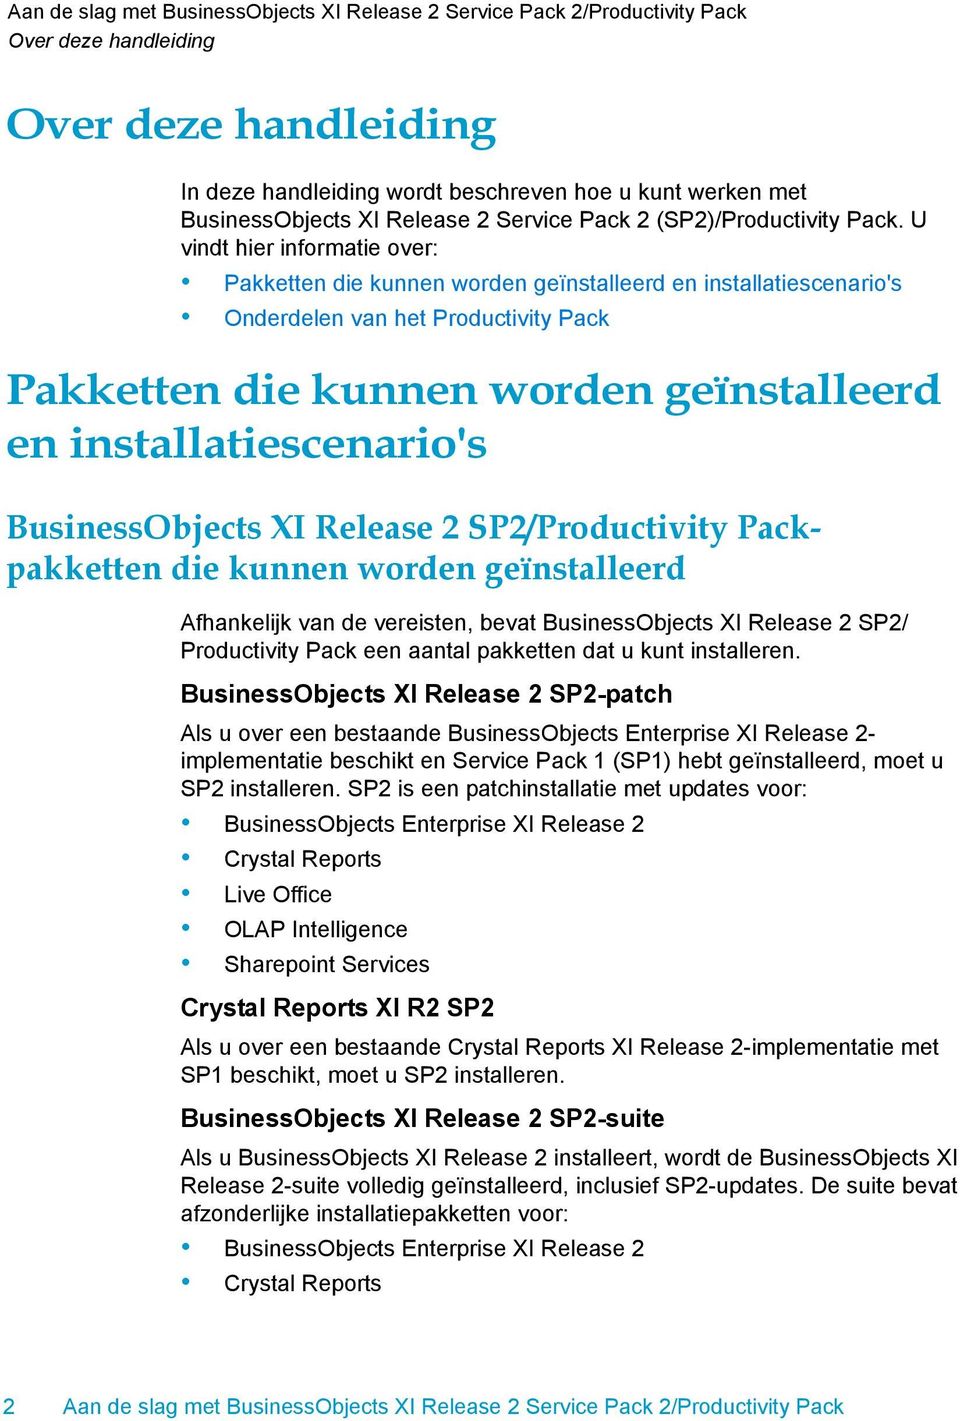 SP2/Productivity Packpakketten die kunnen worden geïnstalleerd Afhankelijk van de vereisten, bevat BusinessObjects XI Release 2 SP2/ Productivity Pack een aantal pakketten dat u kunt installeren.